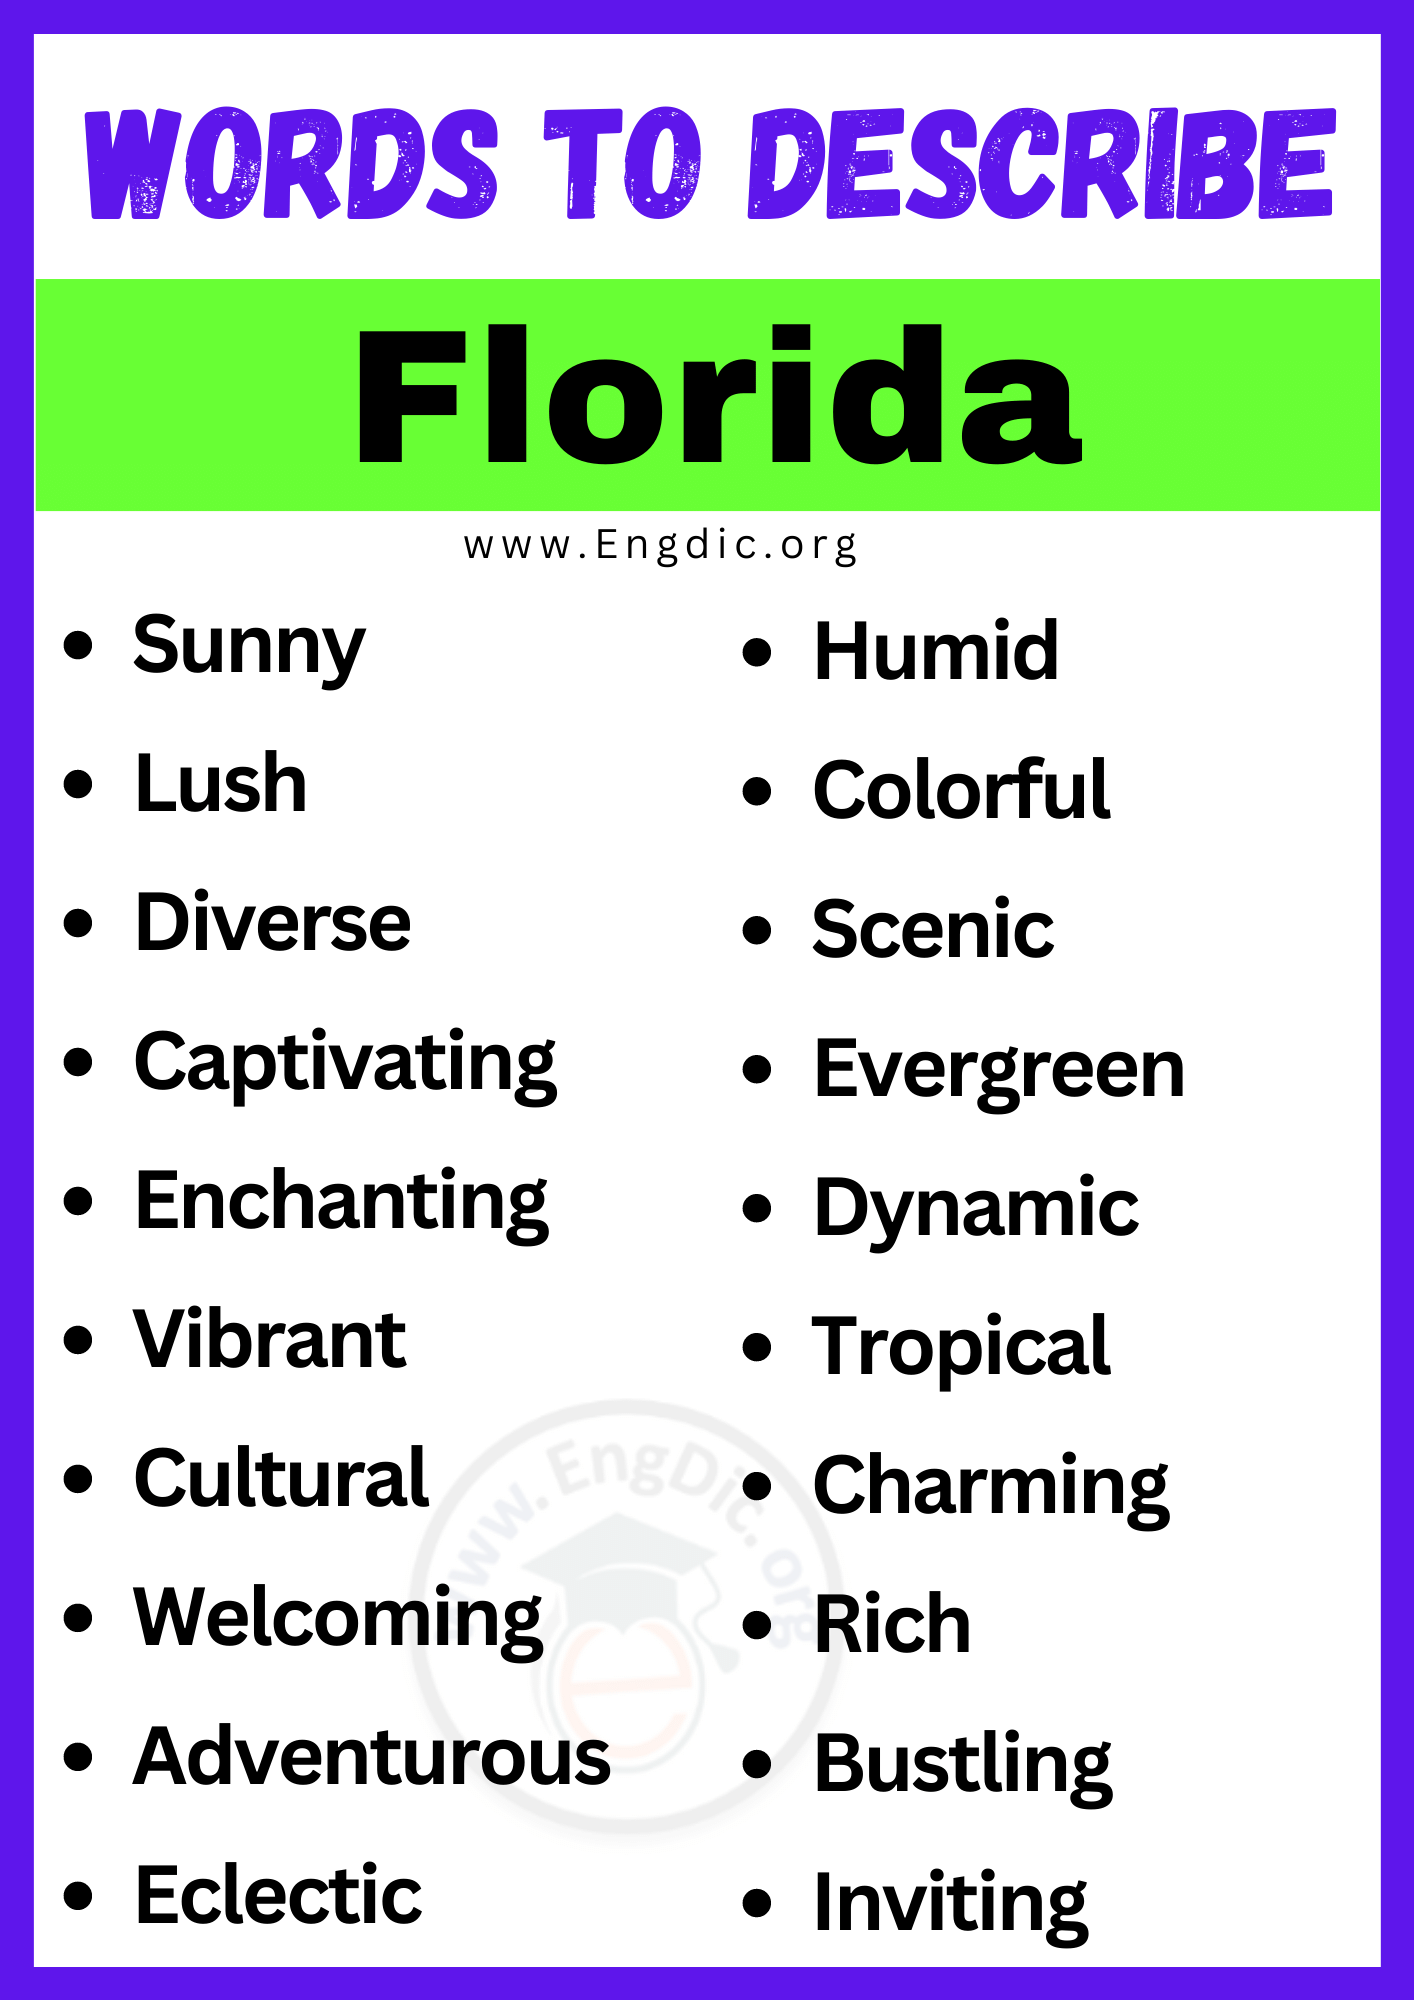 Words to Describe Florida